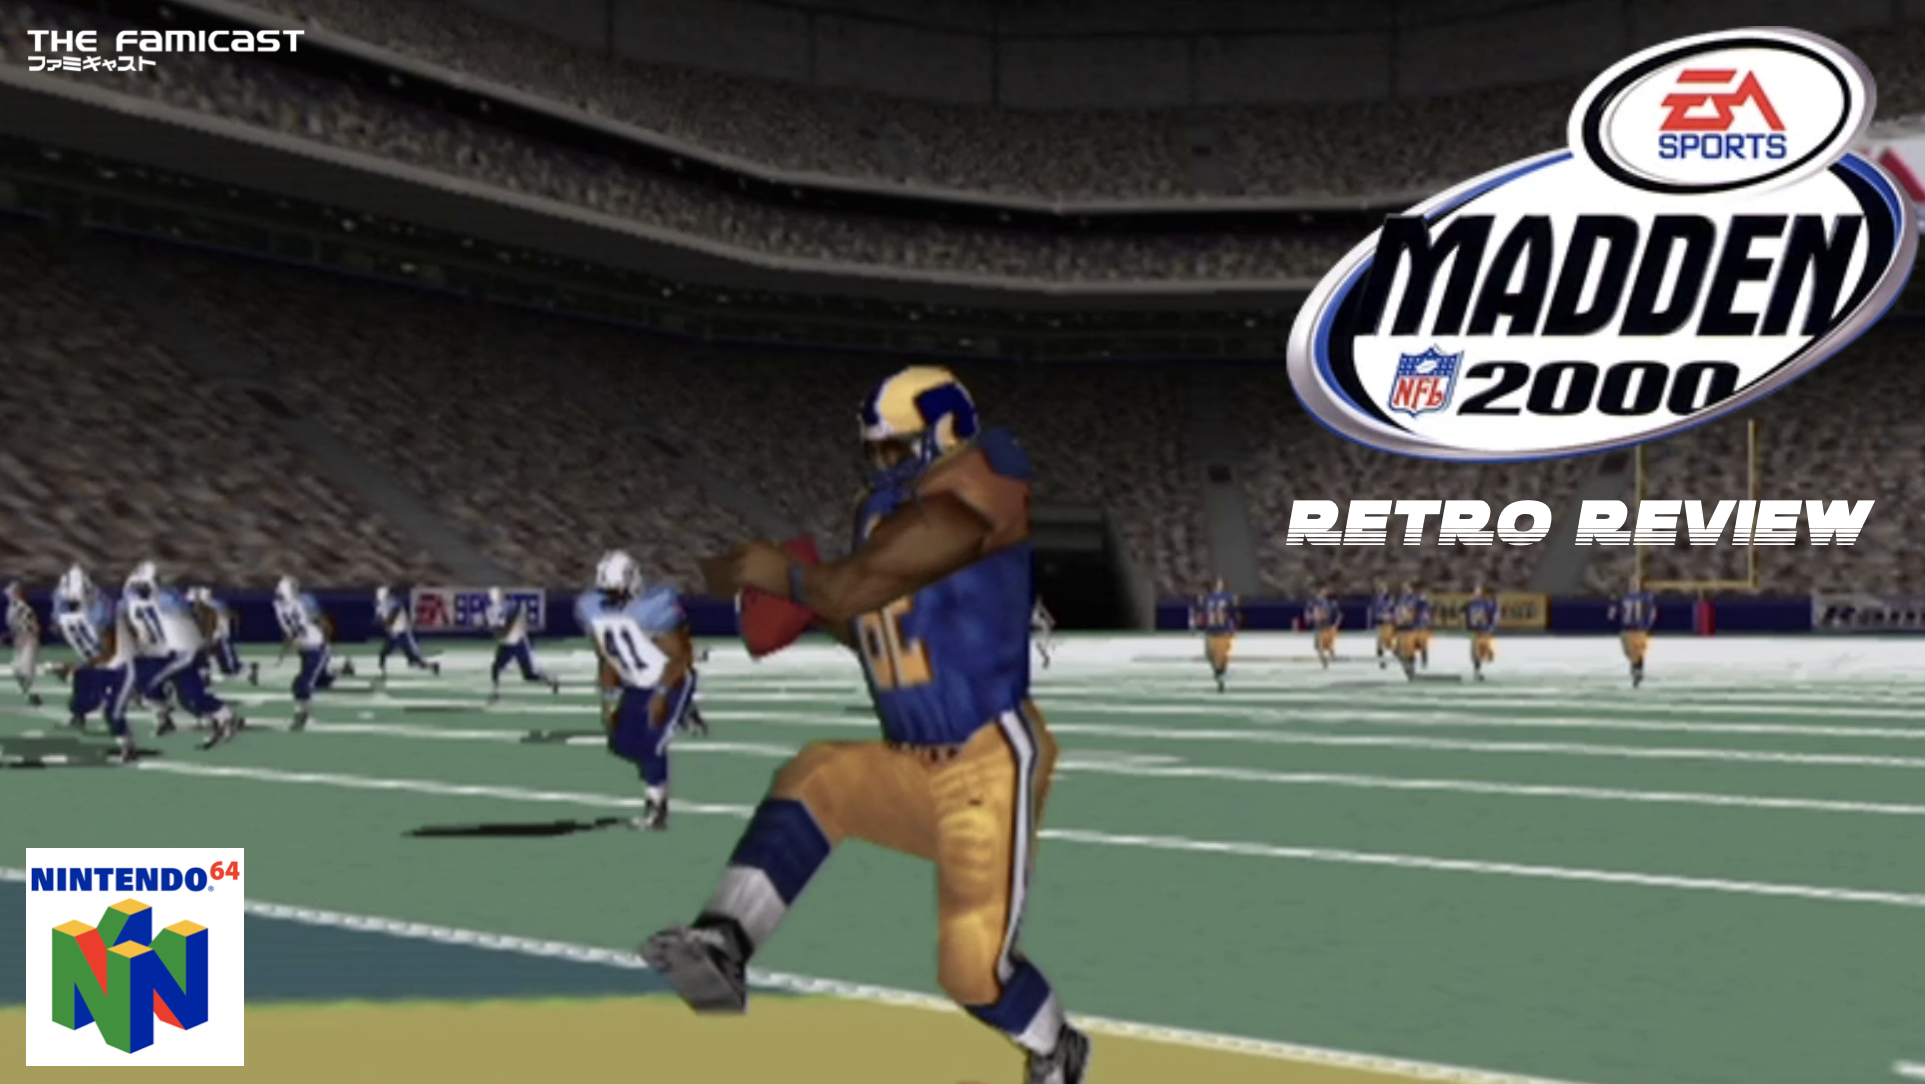 Madden NFL 2000 | Retro Review | Nintendo 64